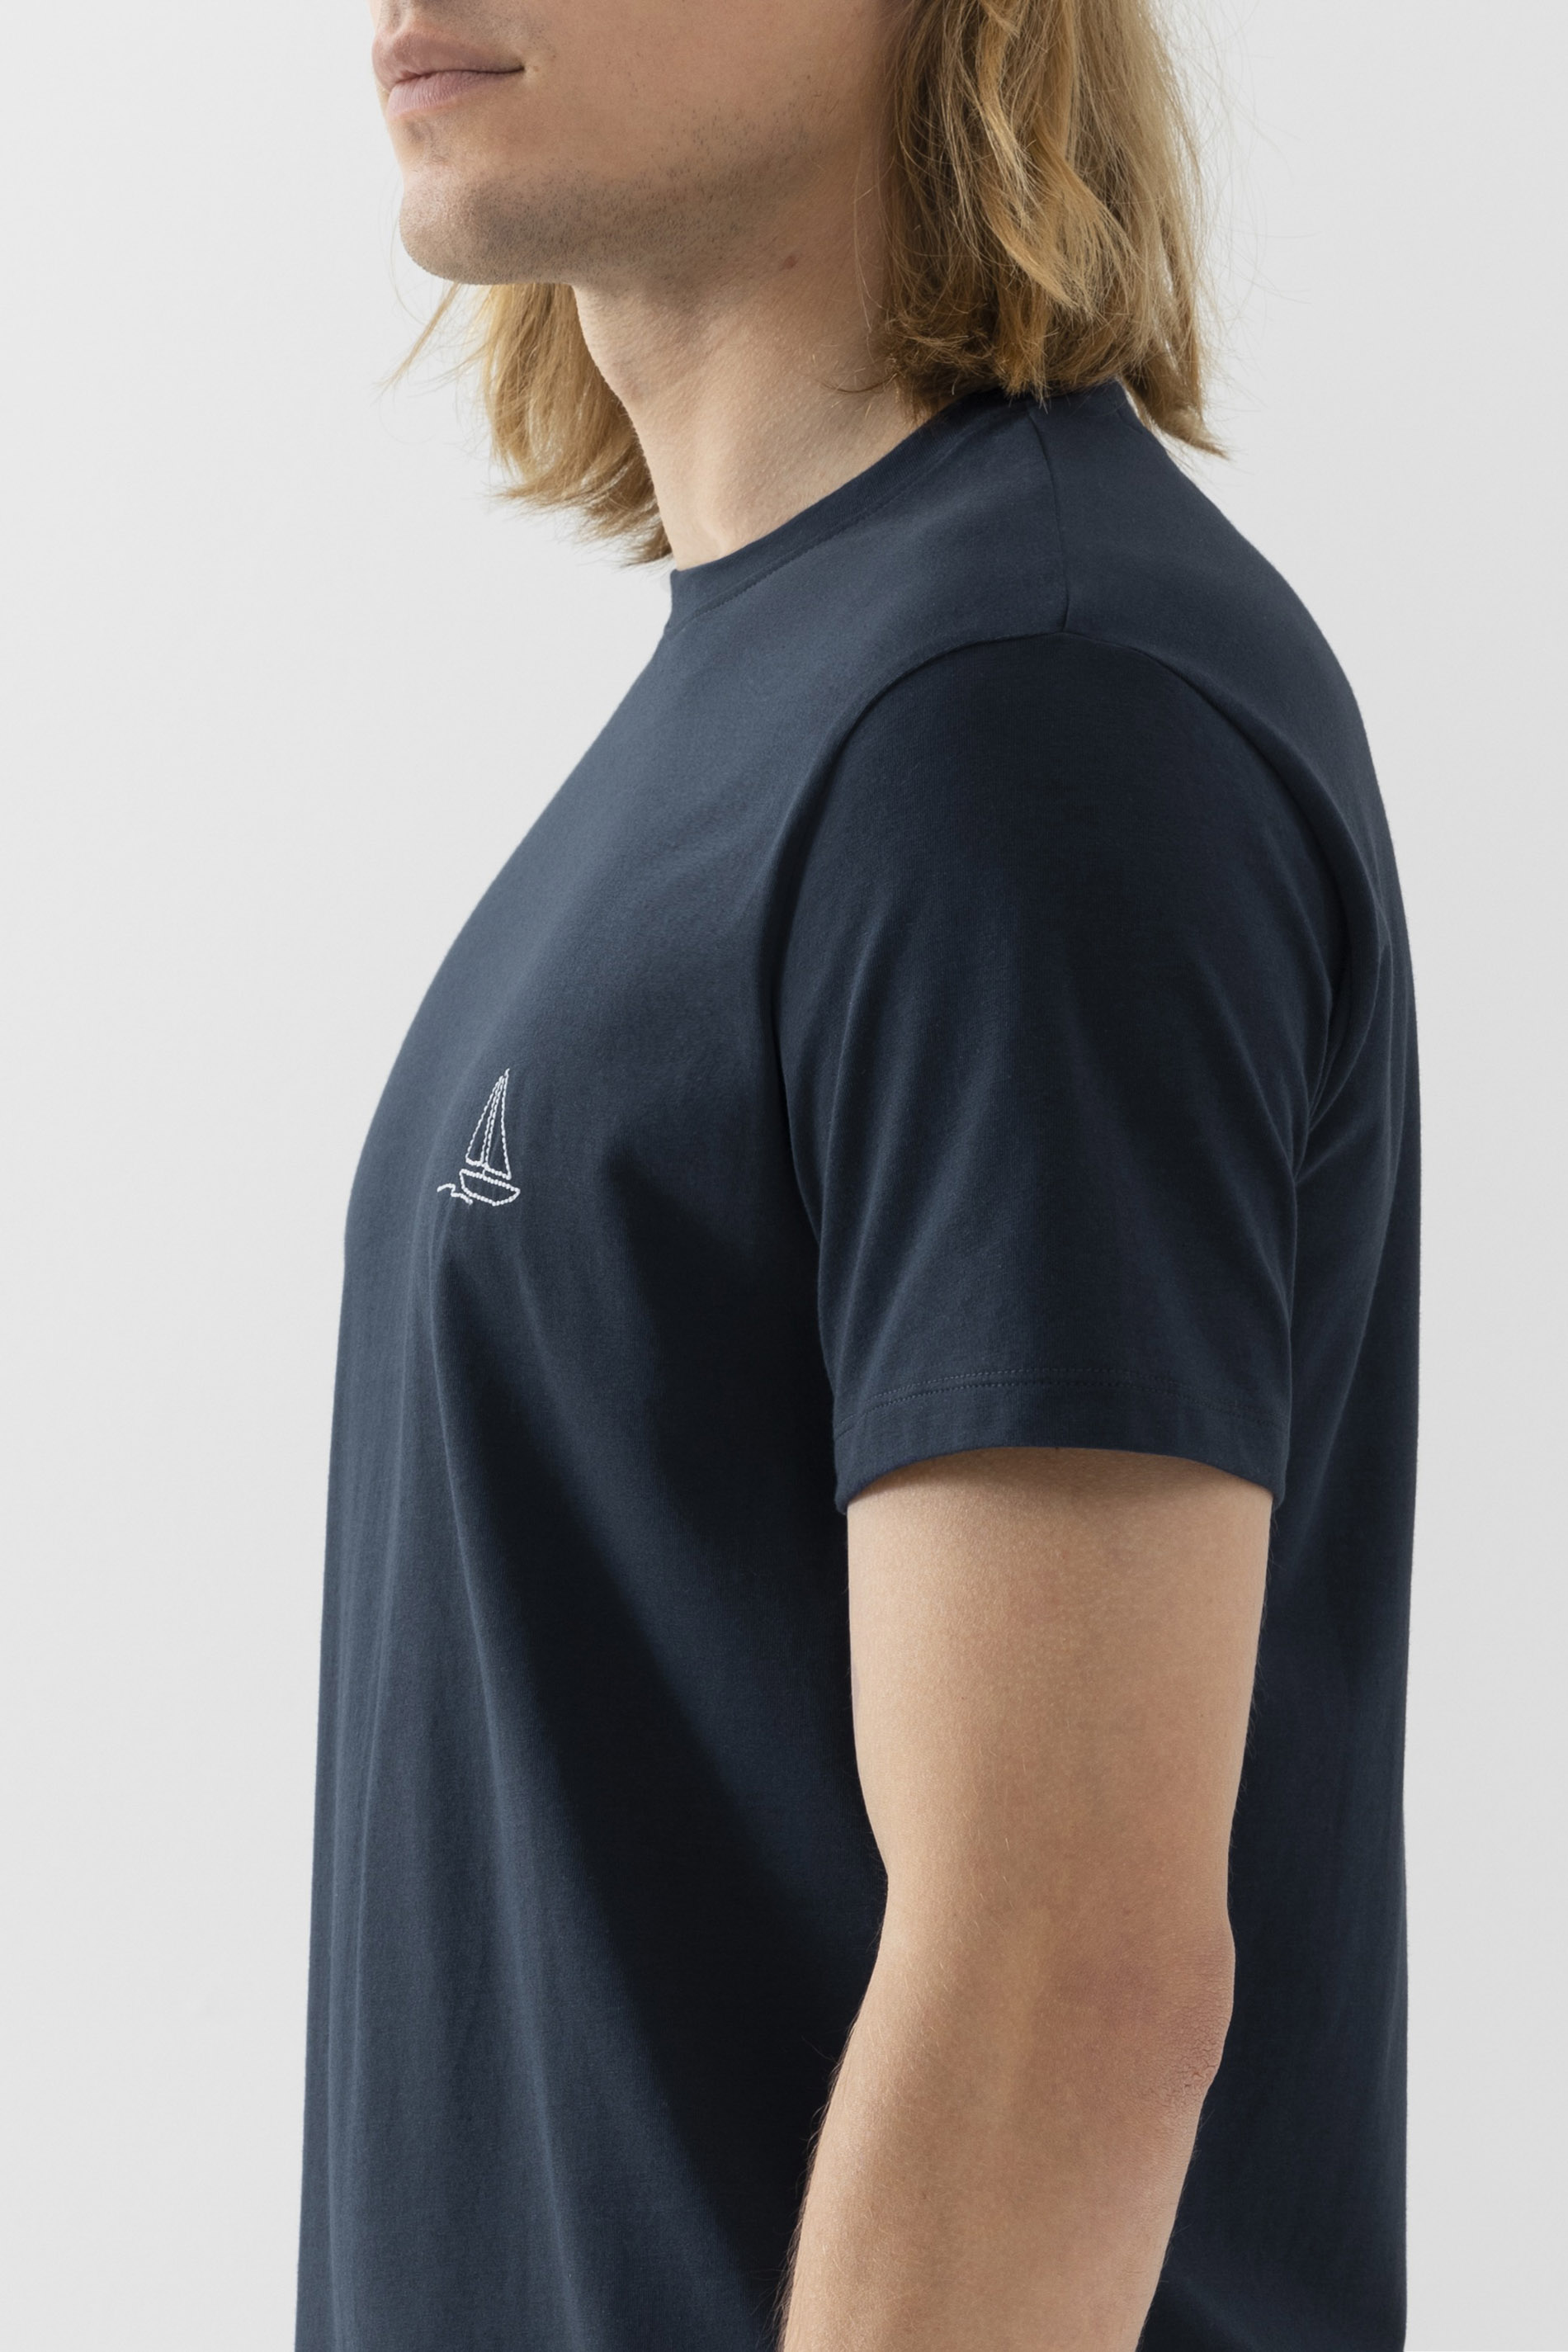 T-shirt Serie Portofino Detailweergave 02 | mey®